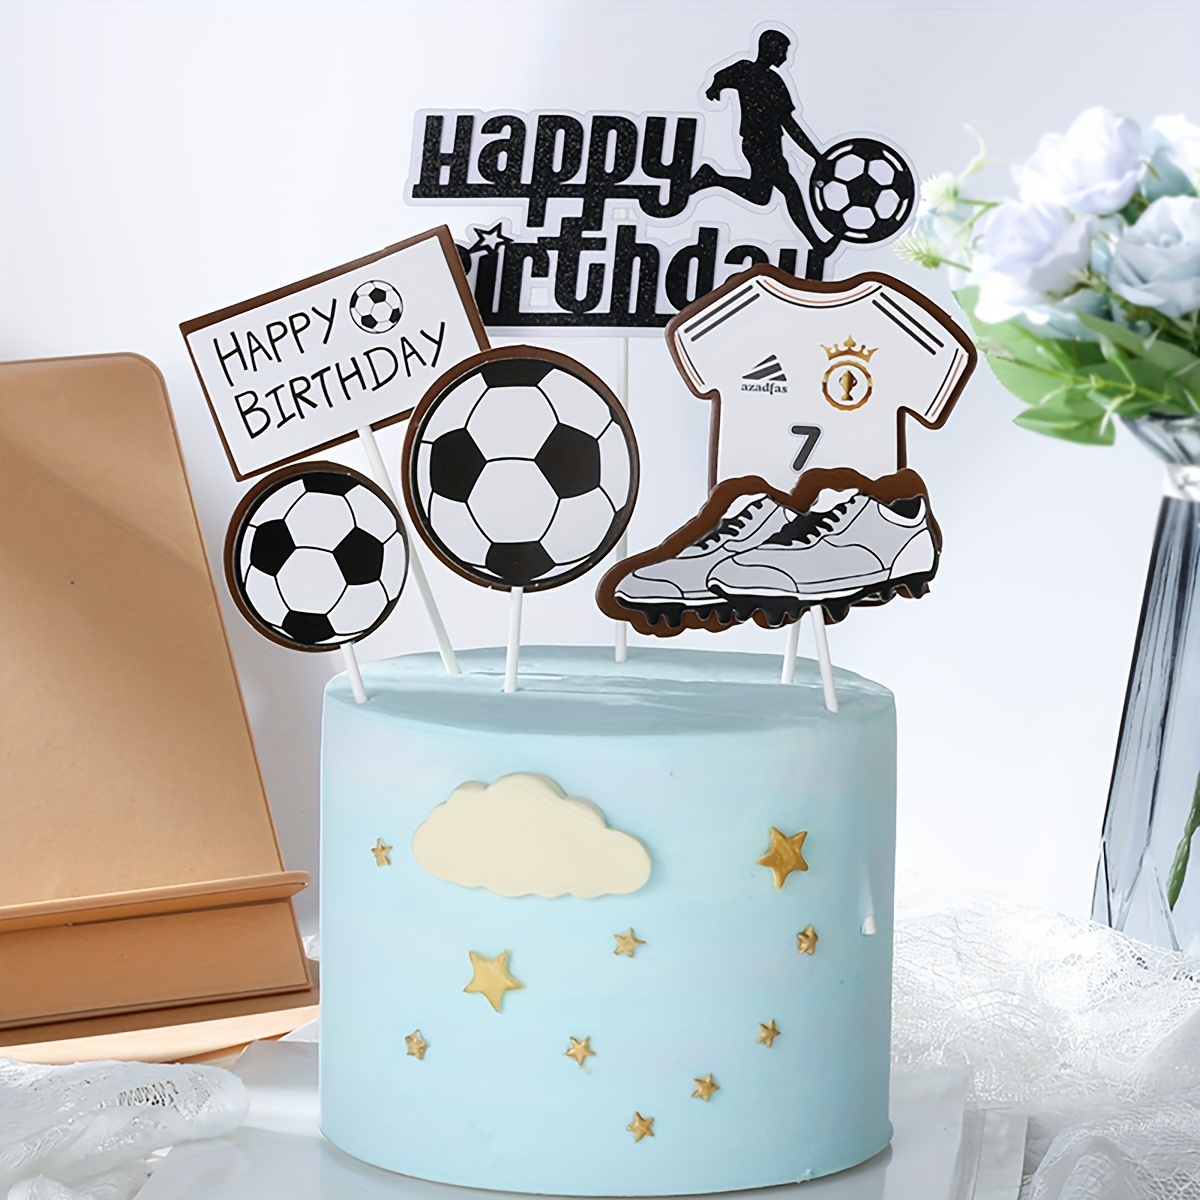 12 adornos para tartas de fútbol, decoración de tartas de fiesta temática  de fútbol, mini jugadores de fútbol, pelotas y portería para niños